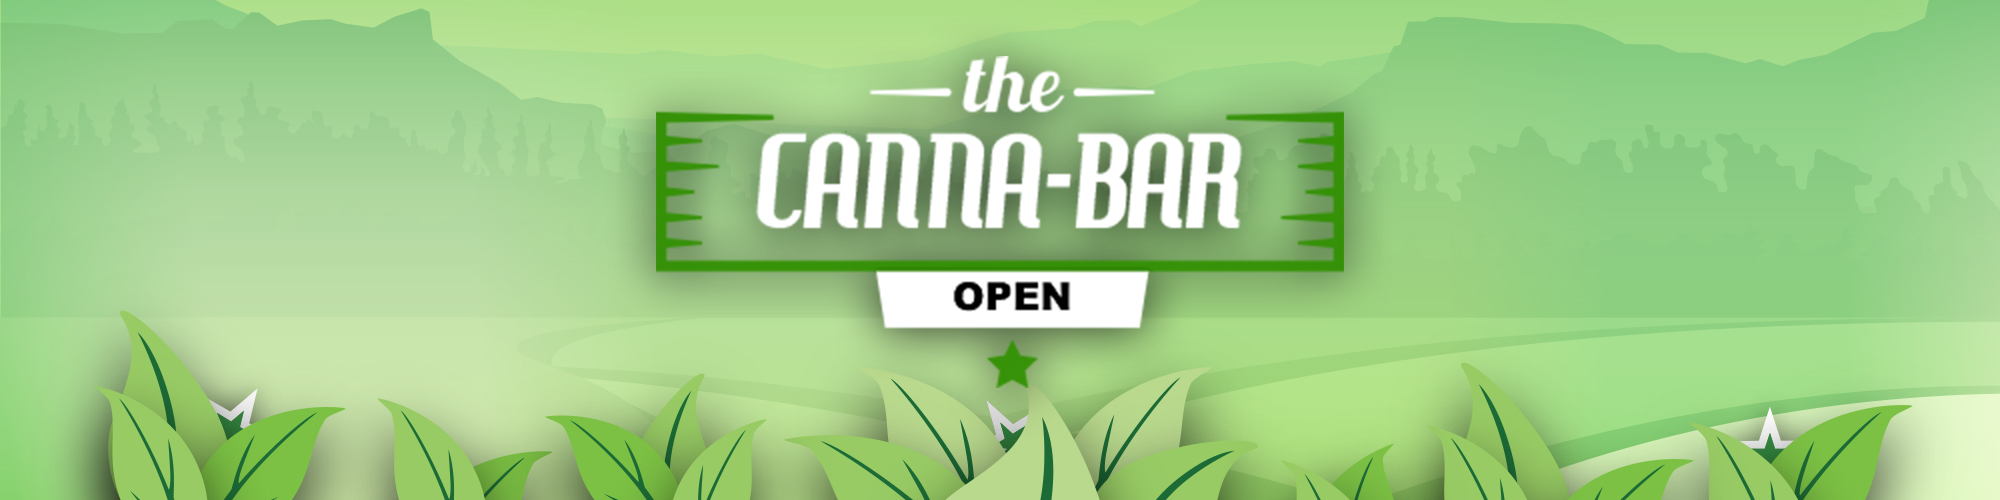 Canna-Bar | Deli Style Cannabis Retail | North Shore MA.